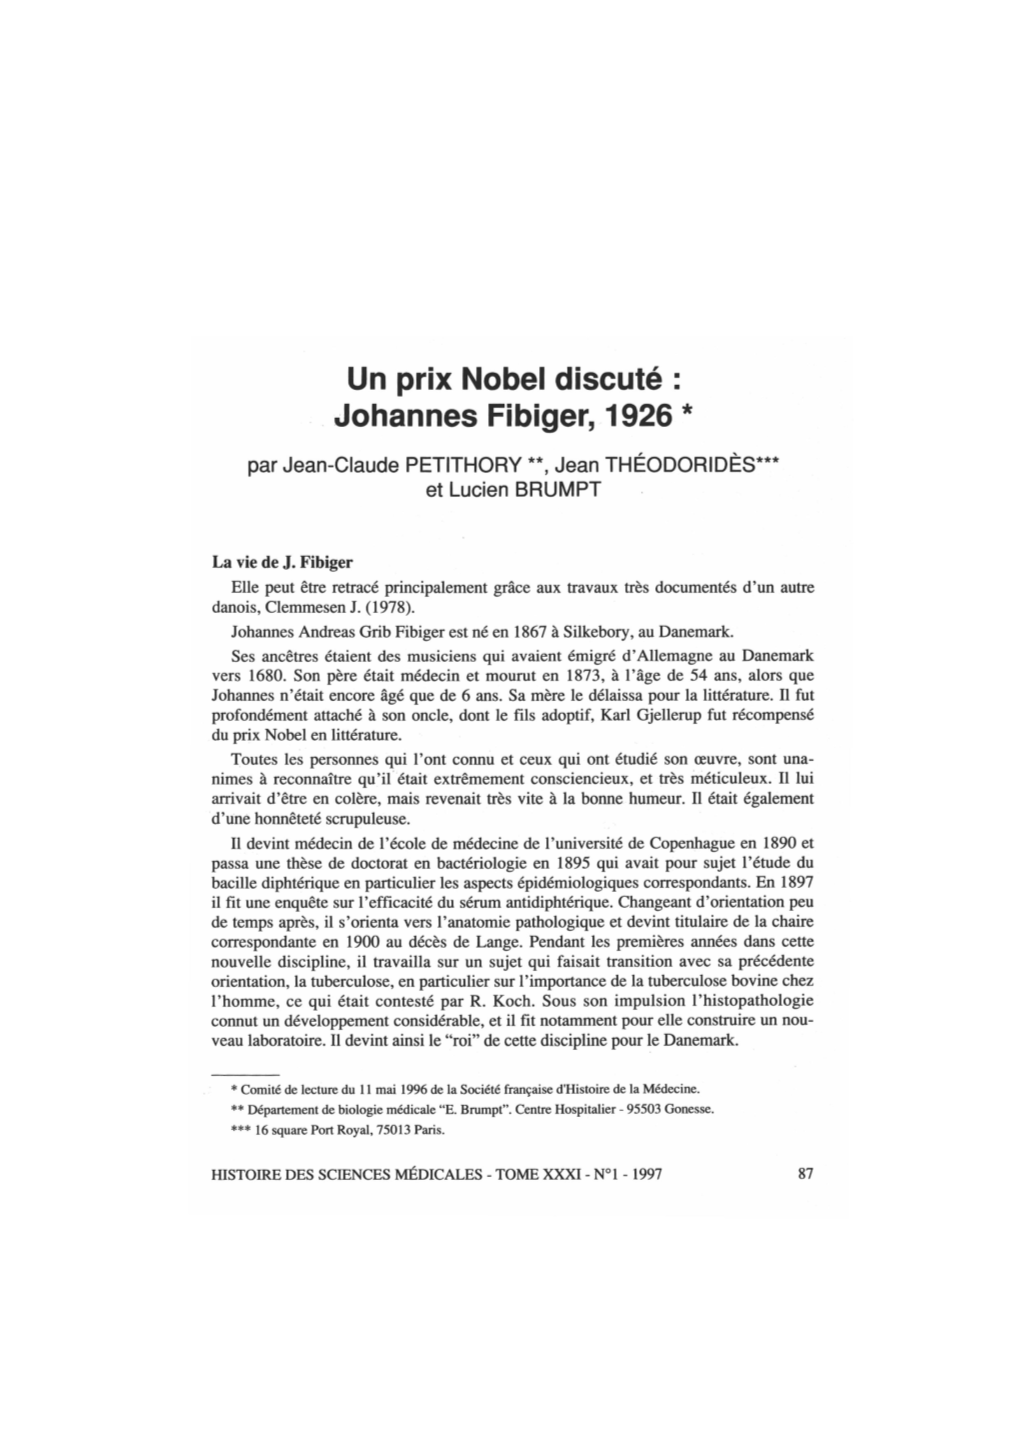 Un Prix Nobel Discuté : Johannes Fibiger, 1926 *